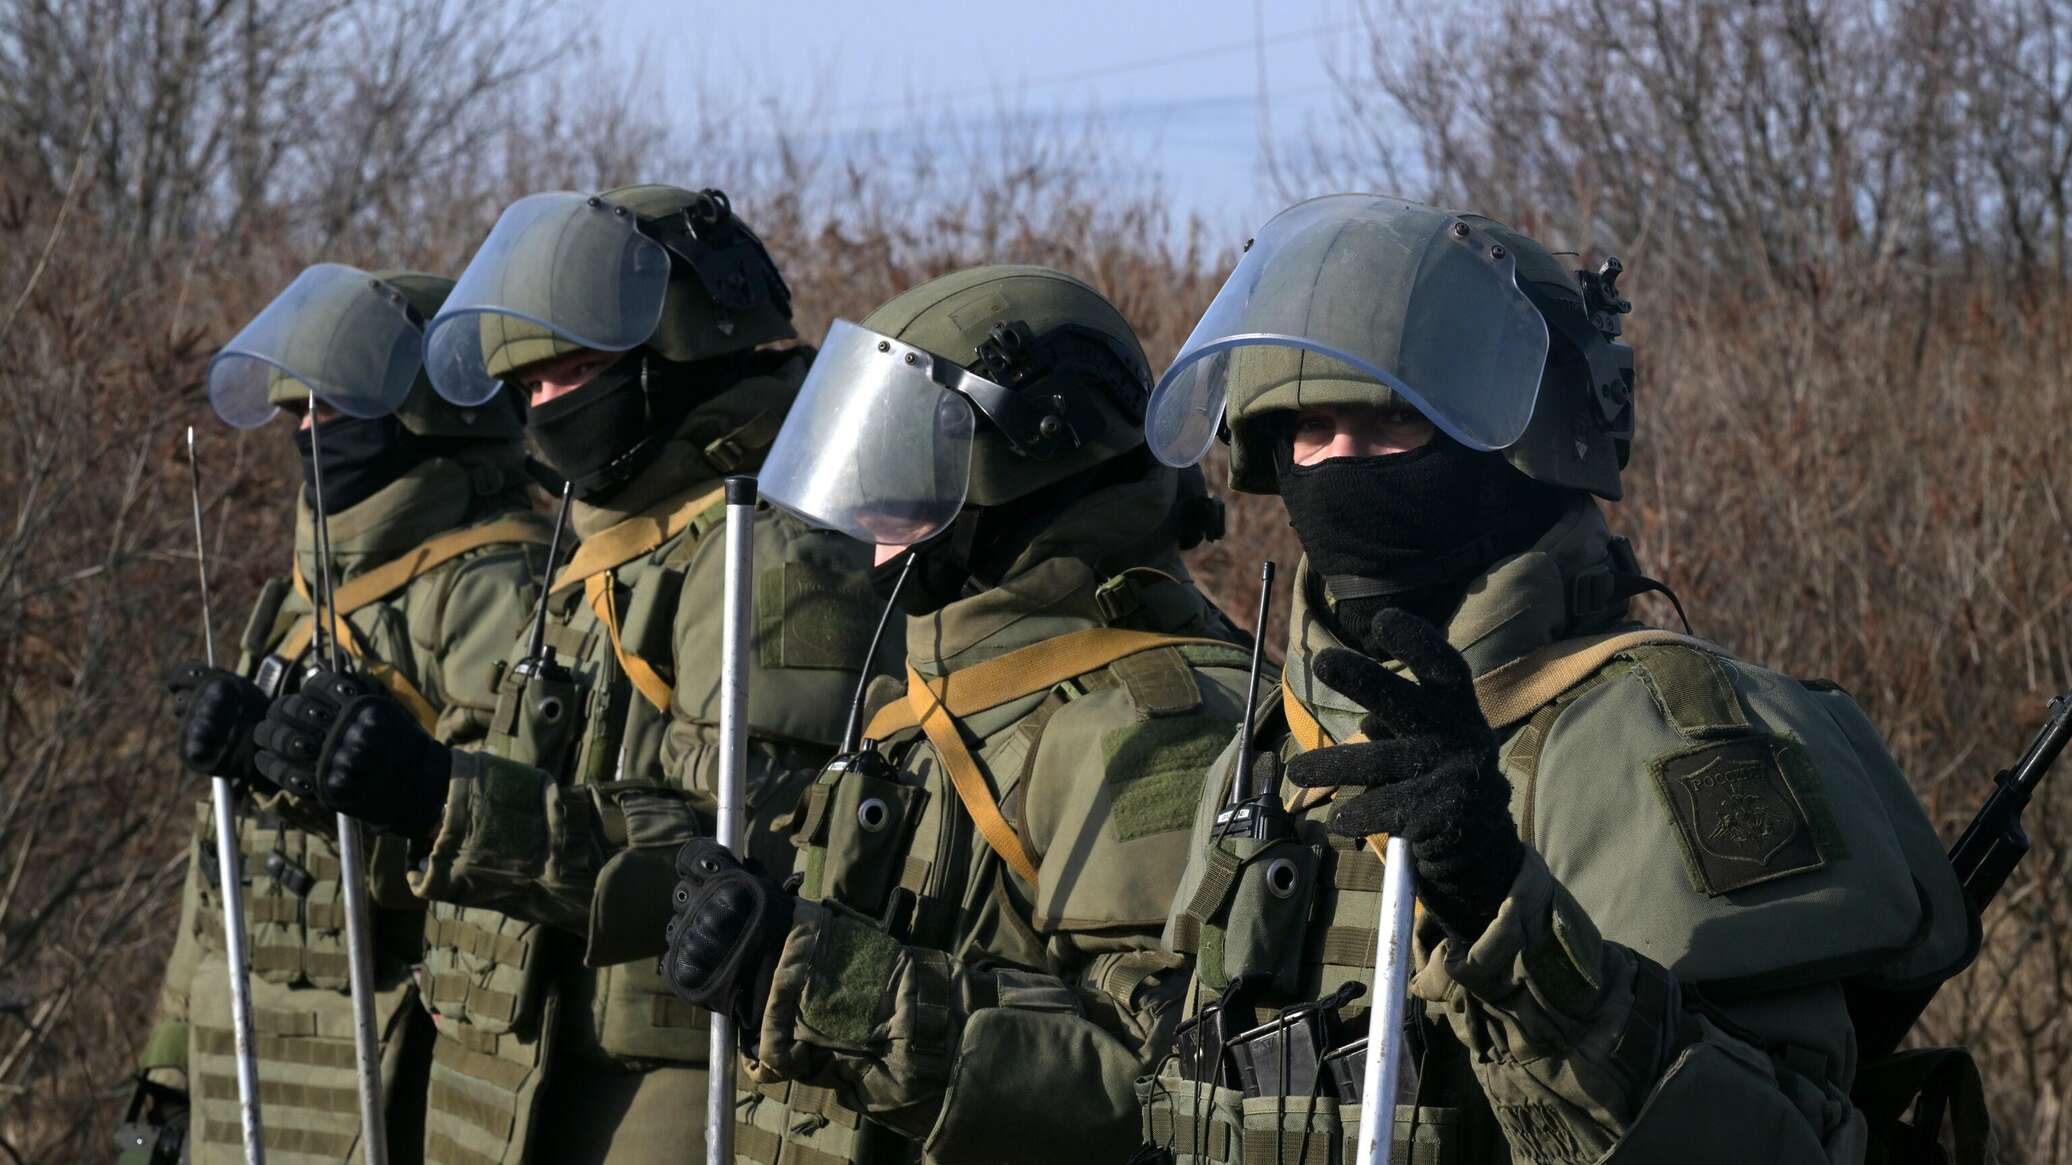 ضابط فرنسي يكشف نتائج الضربة الروسية بالقرب خاركوف